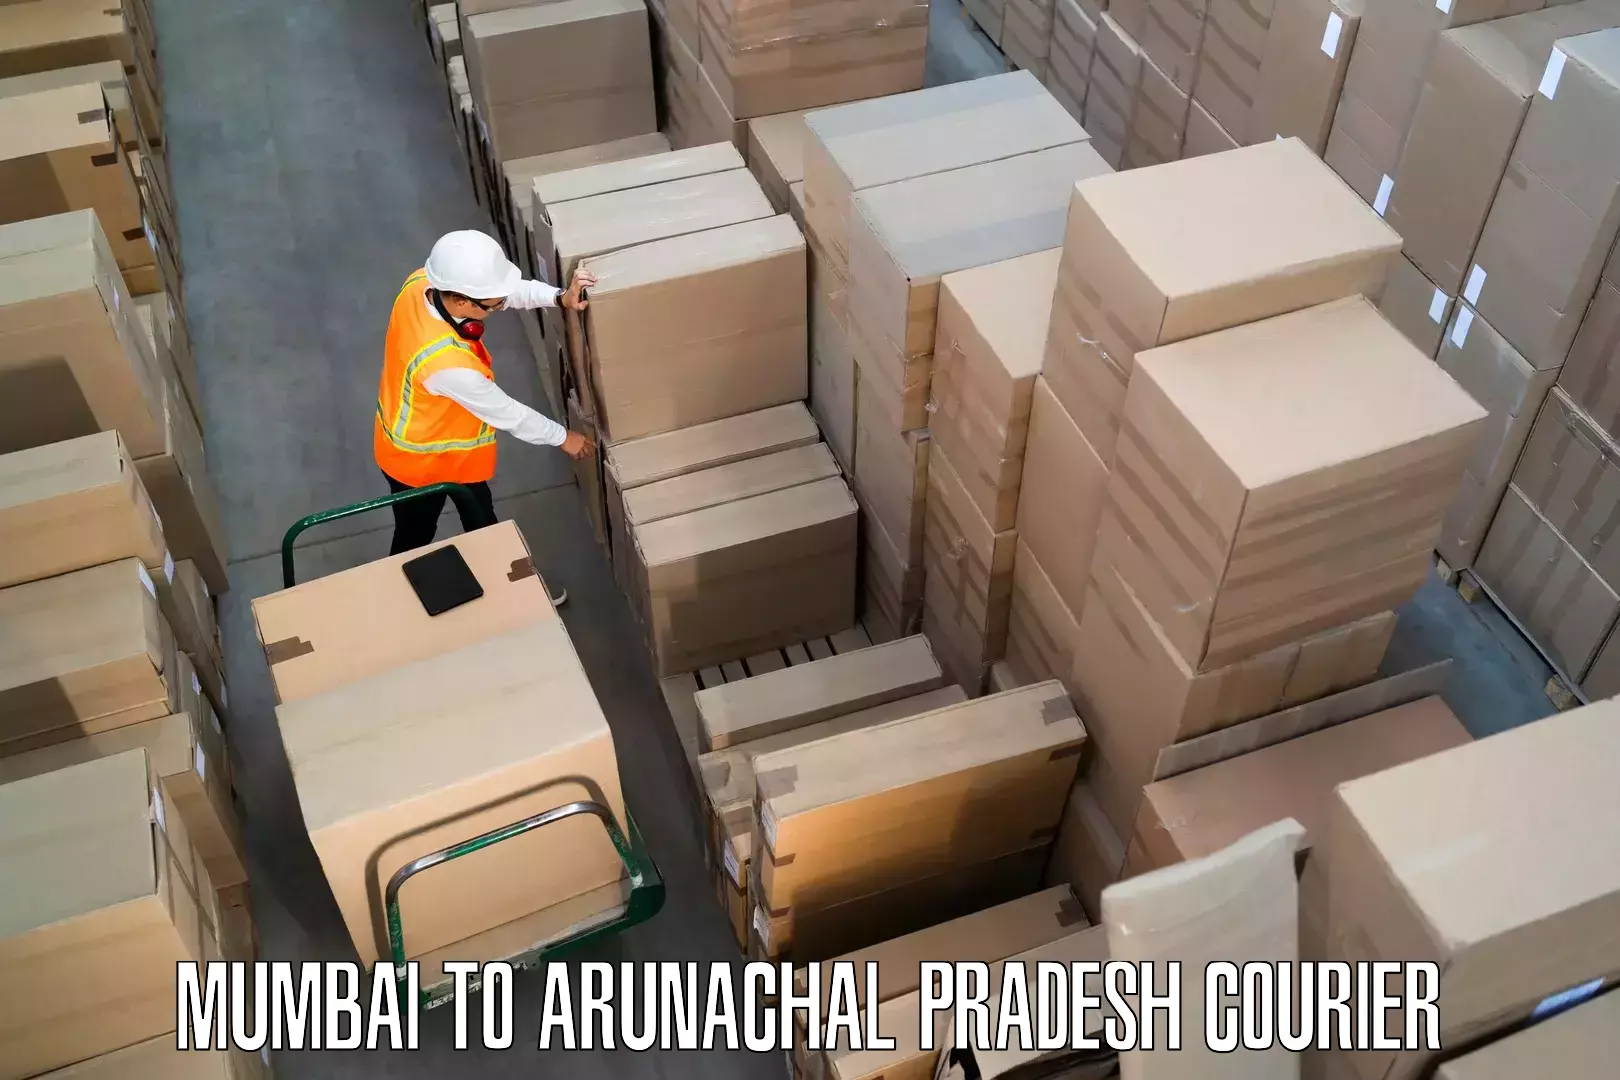 Furniture transport services Mumbai to Namsai